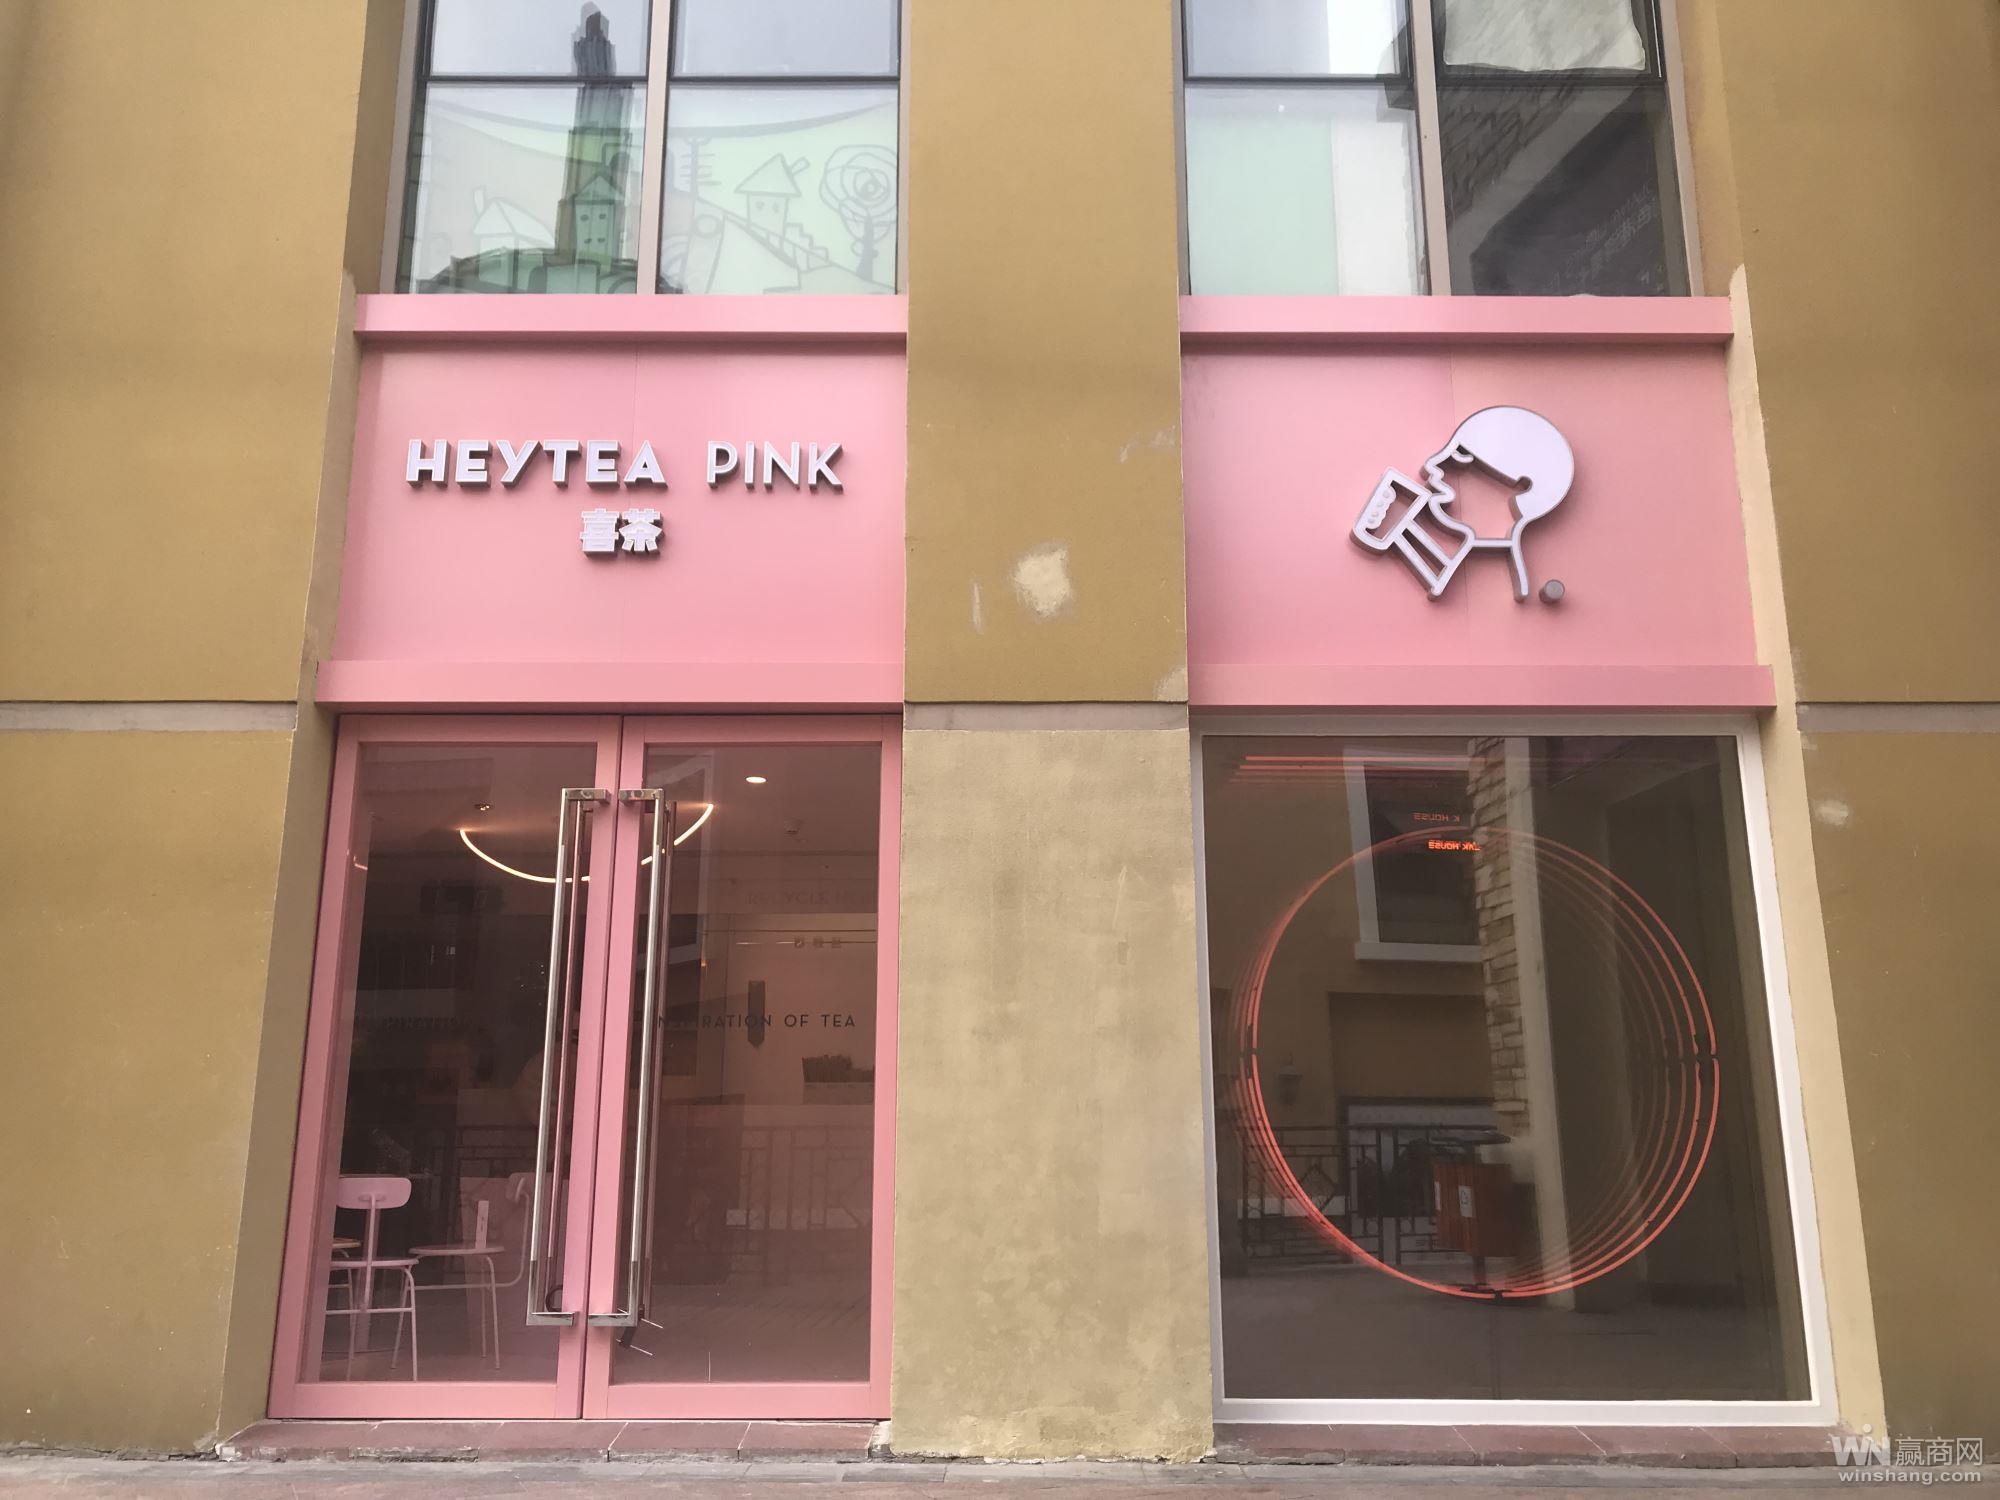 北京首家喜茶pink主题门店开业也将是北京唯一一家